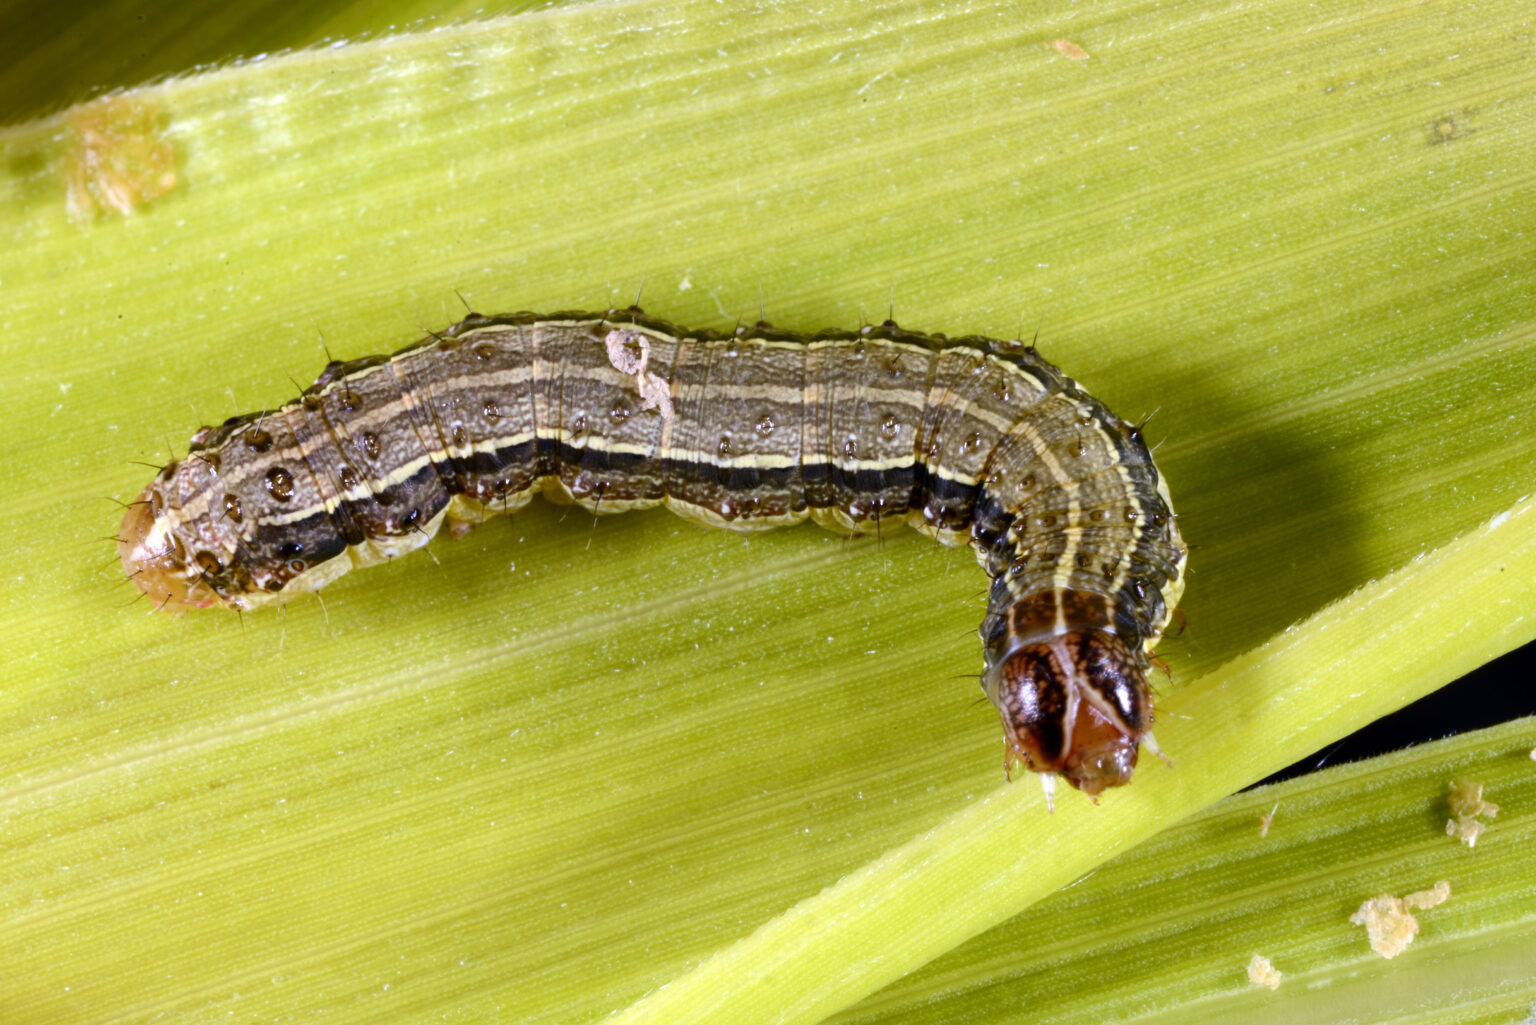 FAW larva